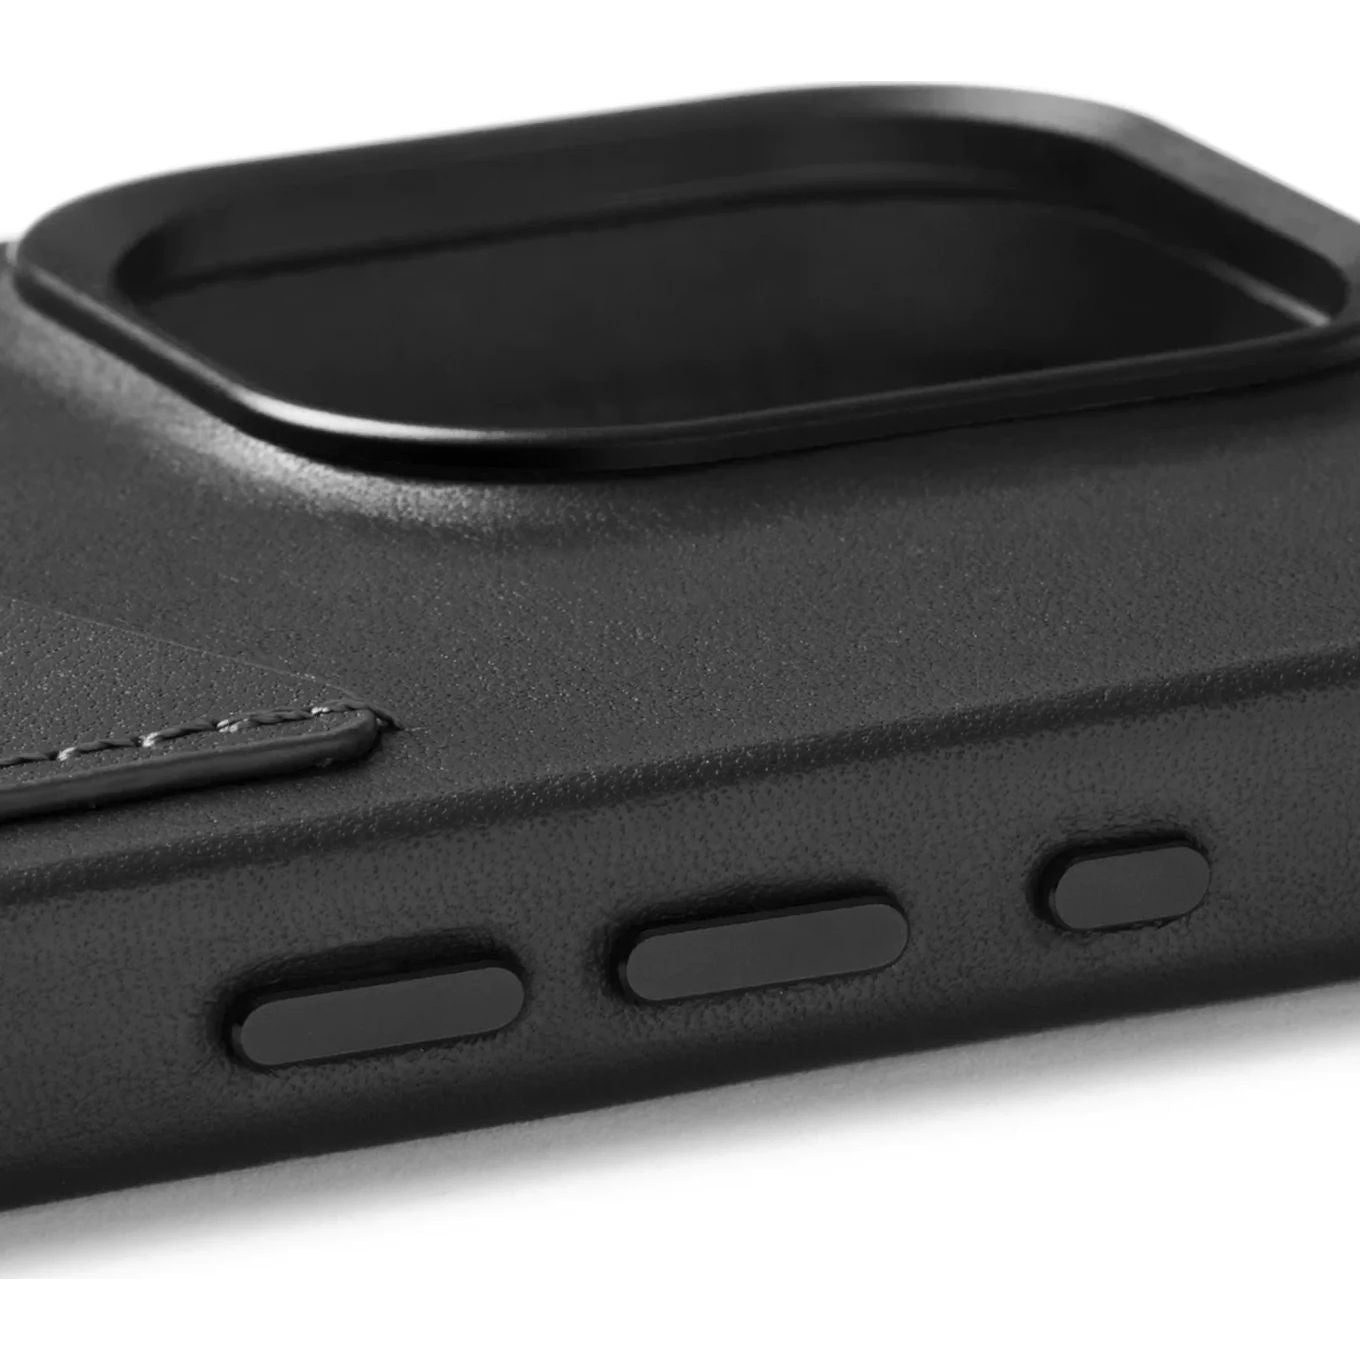 Schutzhülle Mujjo Full Leather Wallet Case MagSafe für Apple iPhone 15 Pro, Schwarz